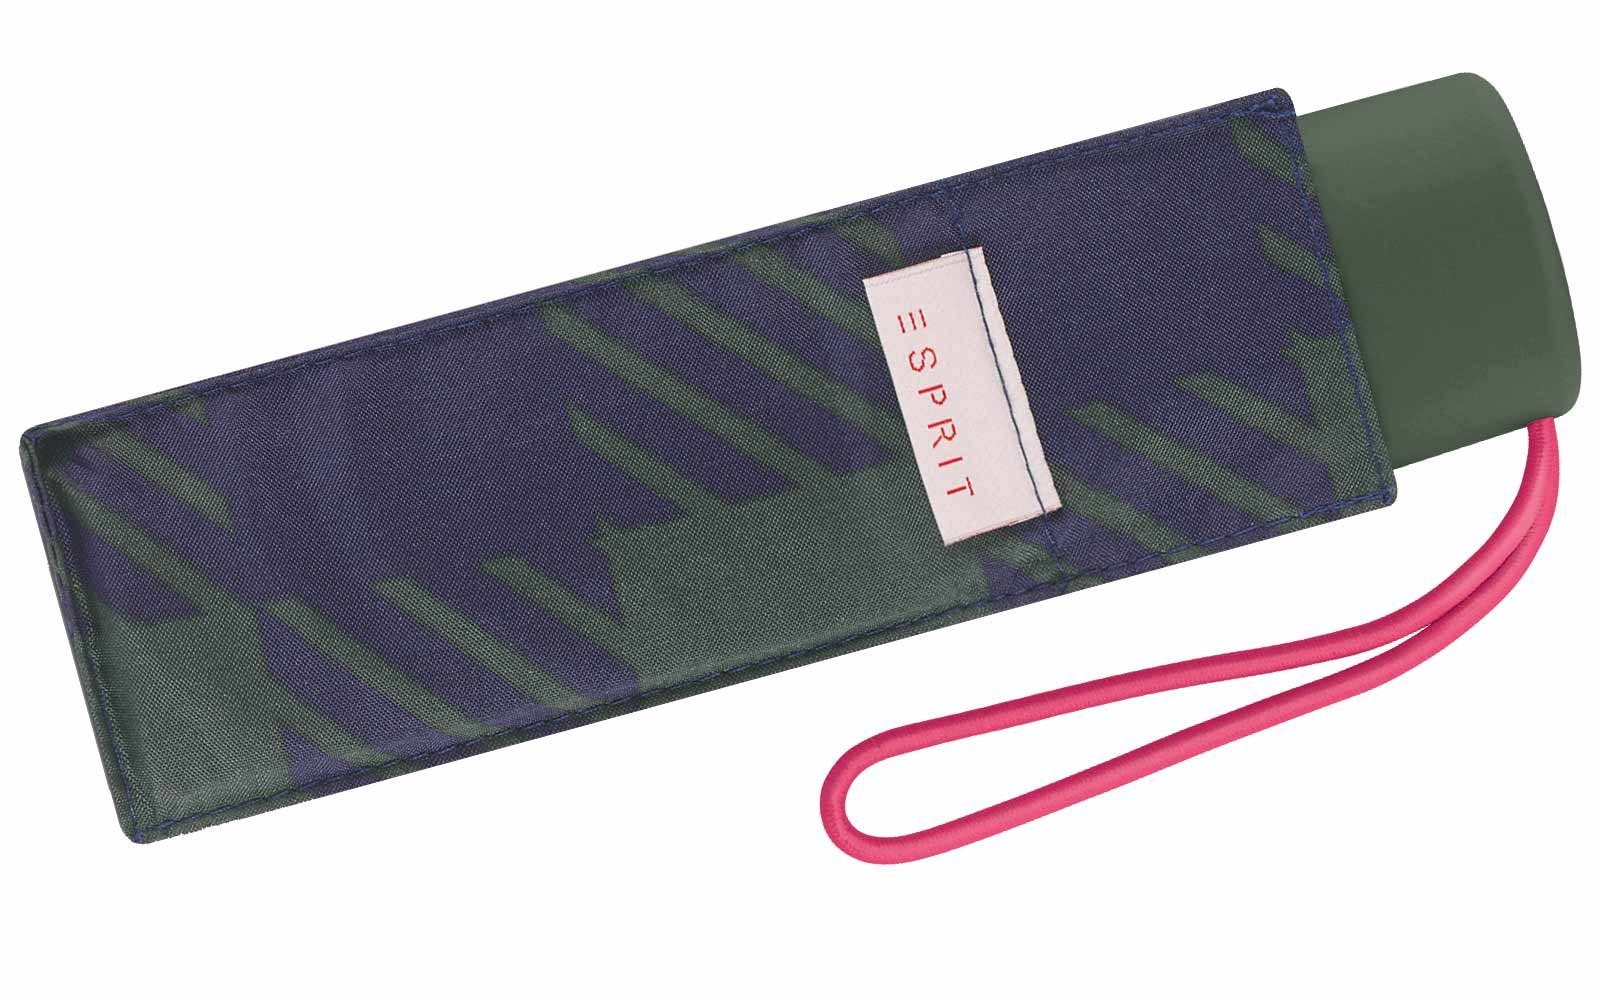 Design Esprit handlicher in Damen, grün modischen Farben Schirm Taschenregenschirm für kleiner, klassisches